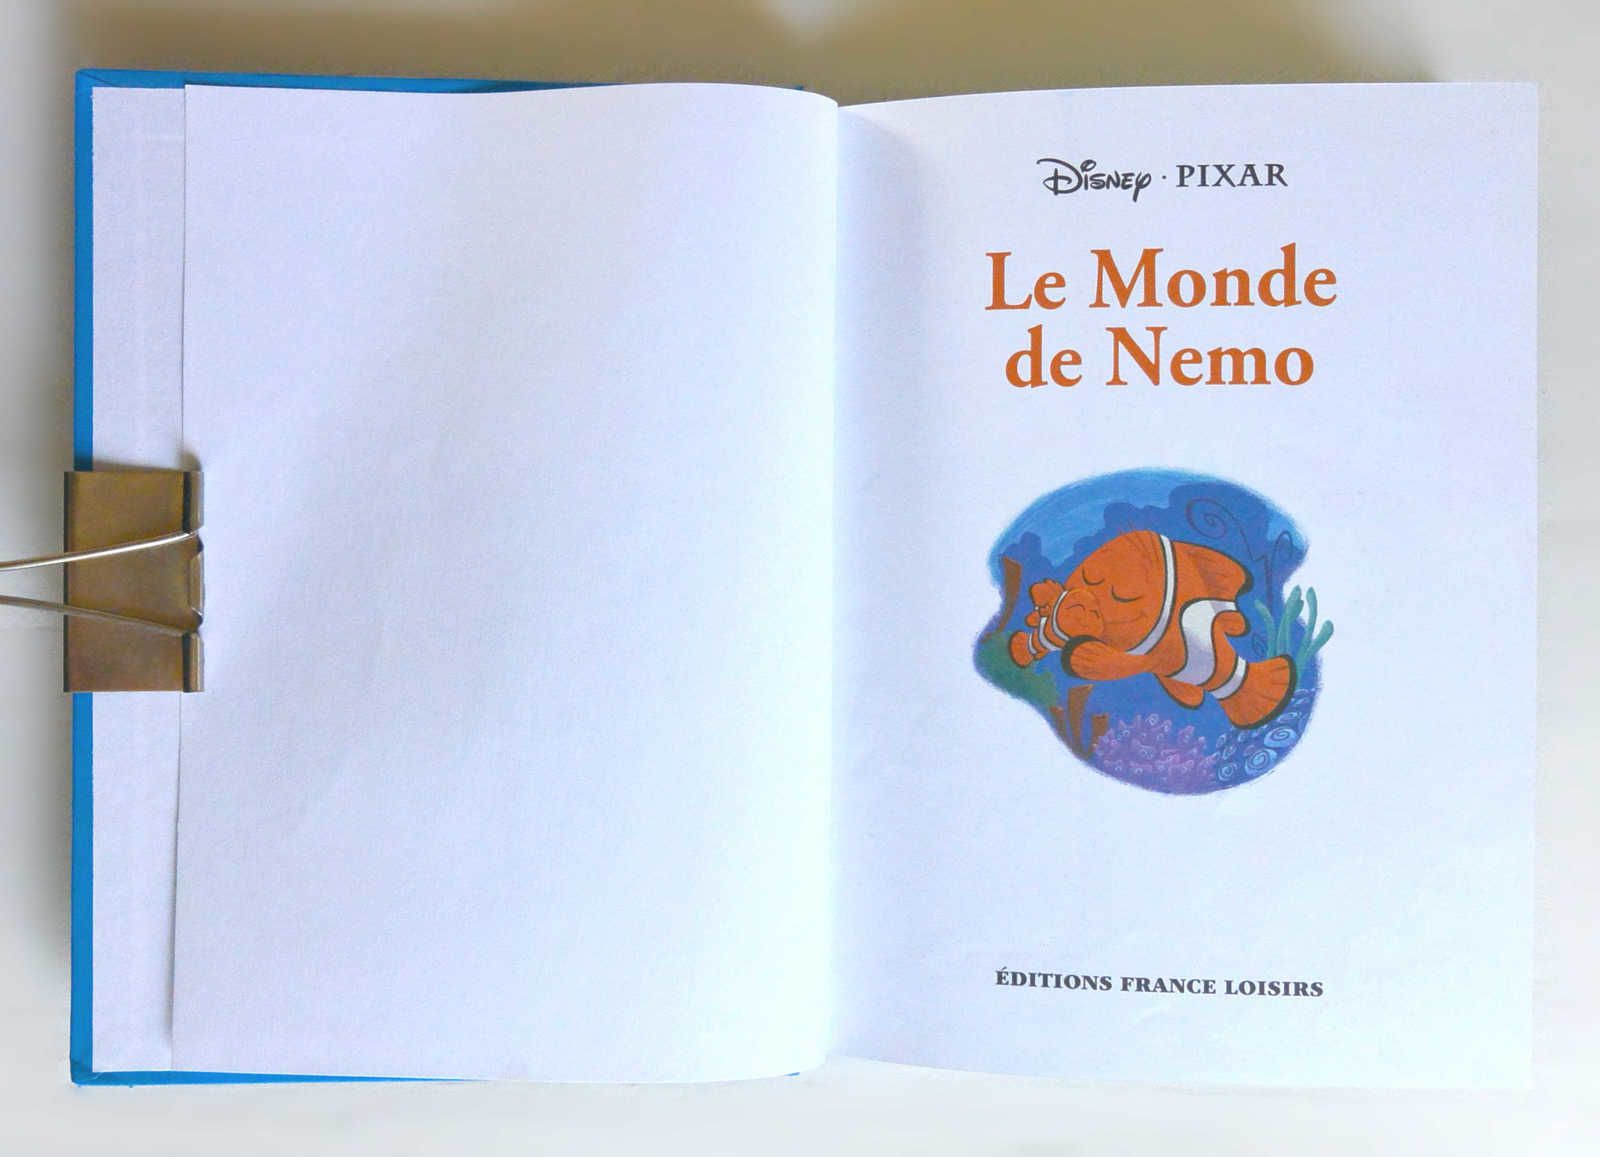 Livre « Le monde de Némo » de Disney - Pixar, ed. France Loisirs 2003